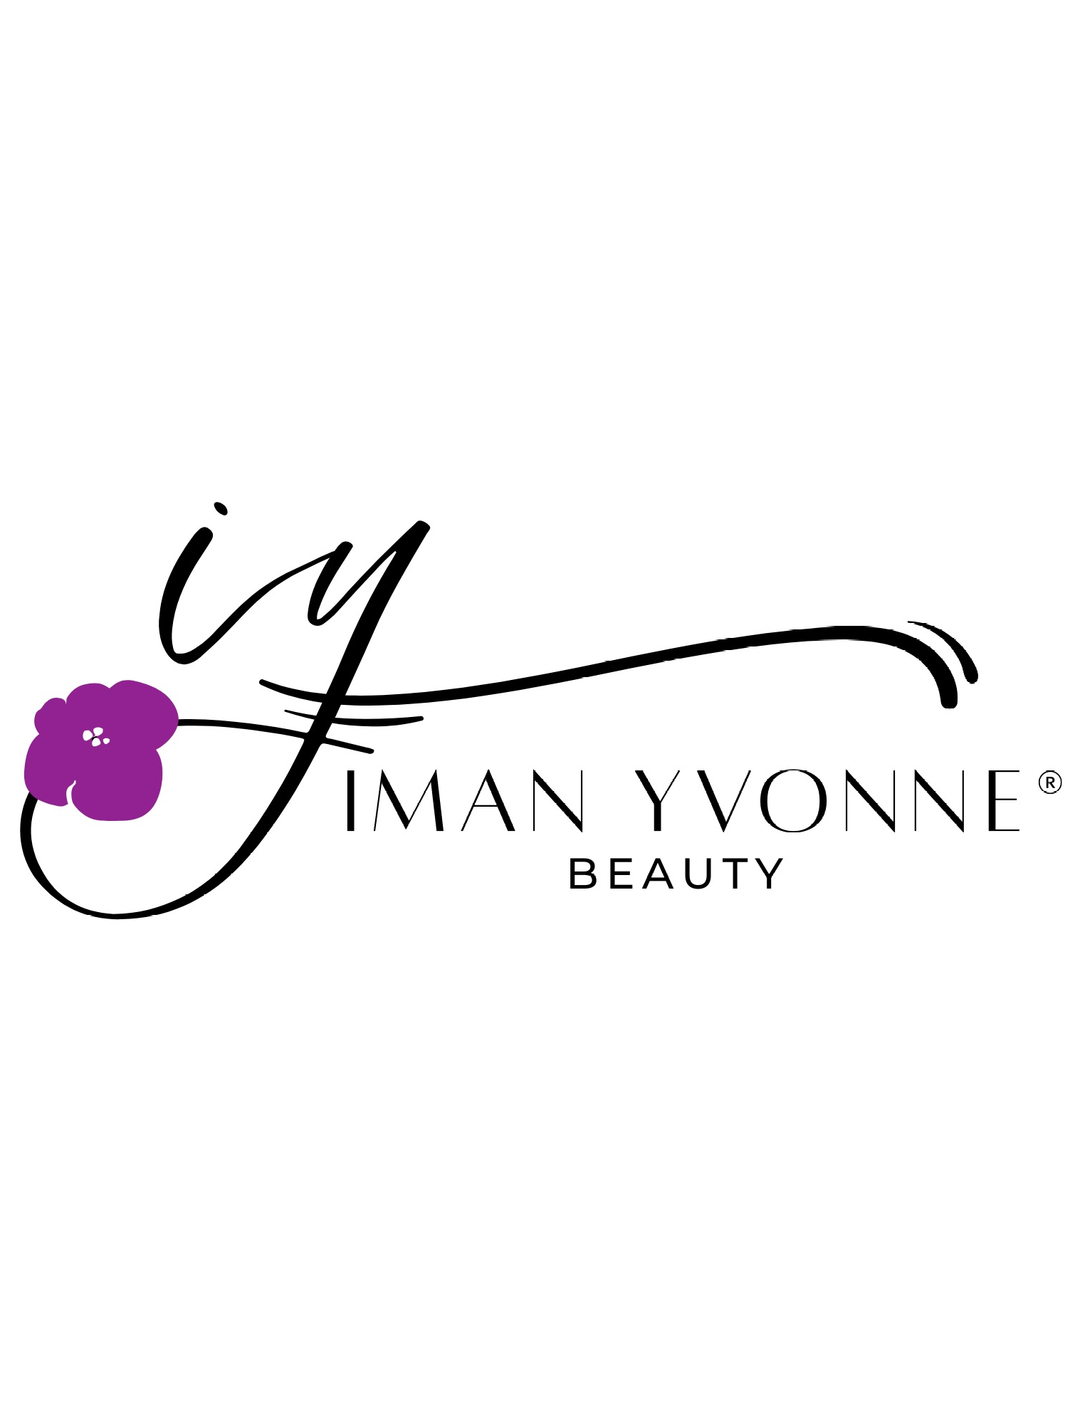 Iman Yvonne Beauty - Gift Card